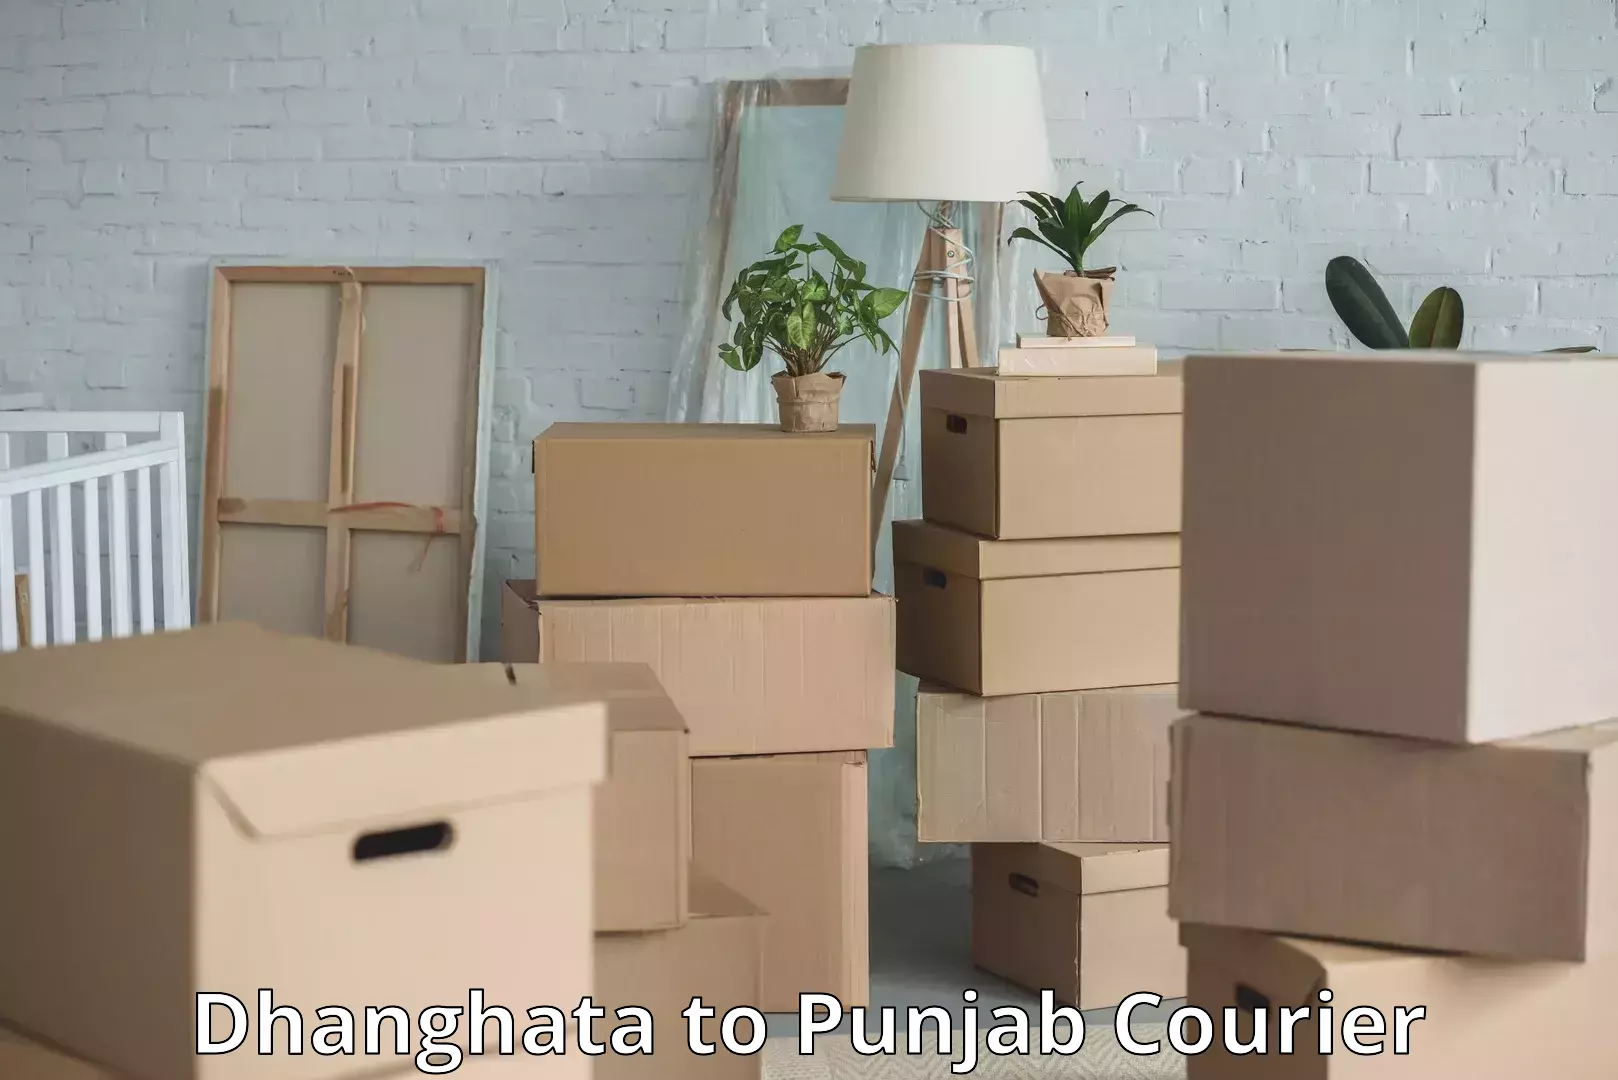 Baggage transport scheduler Dhanghata to Punjab